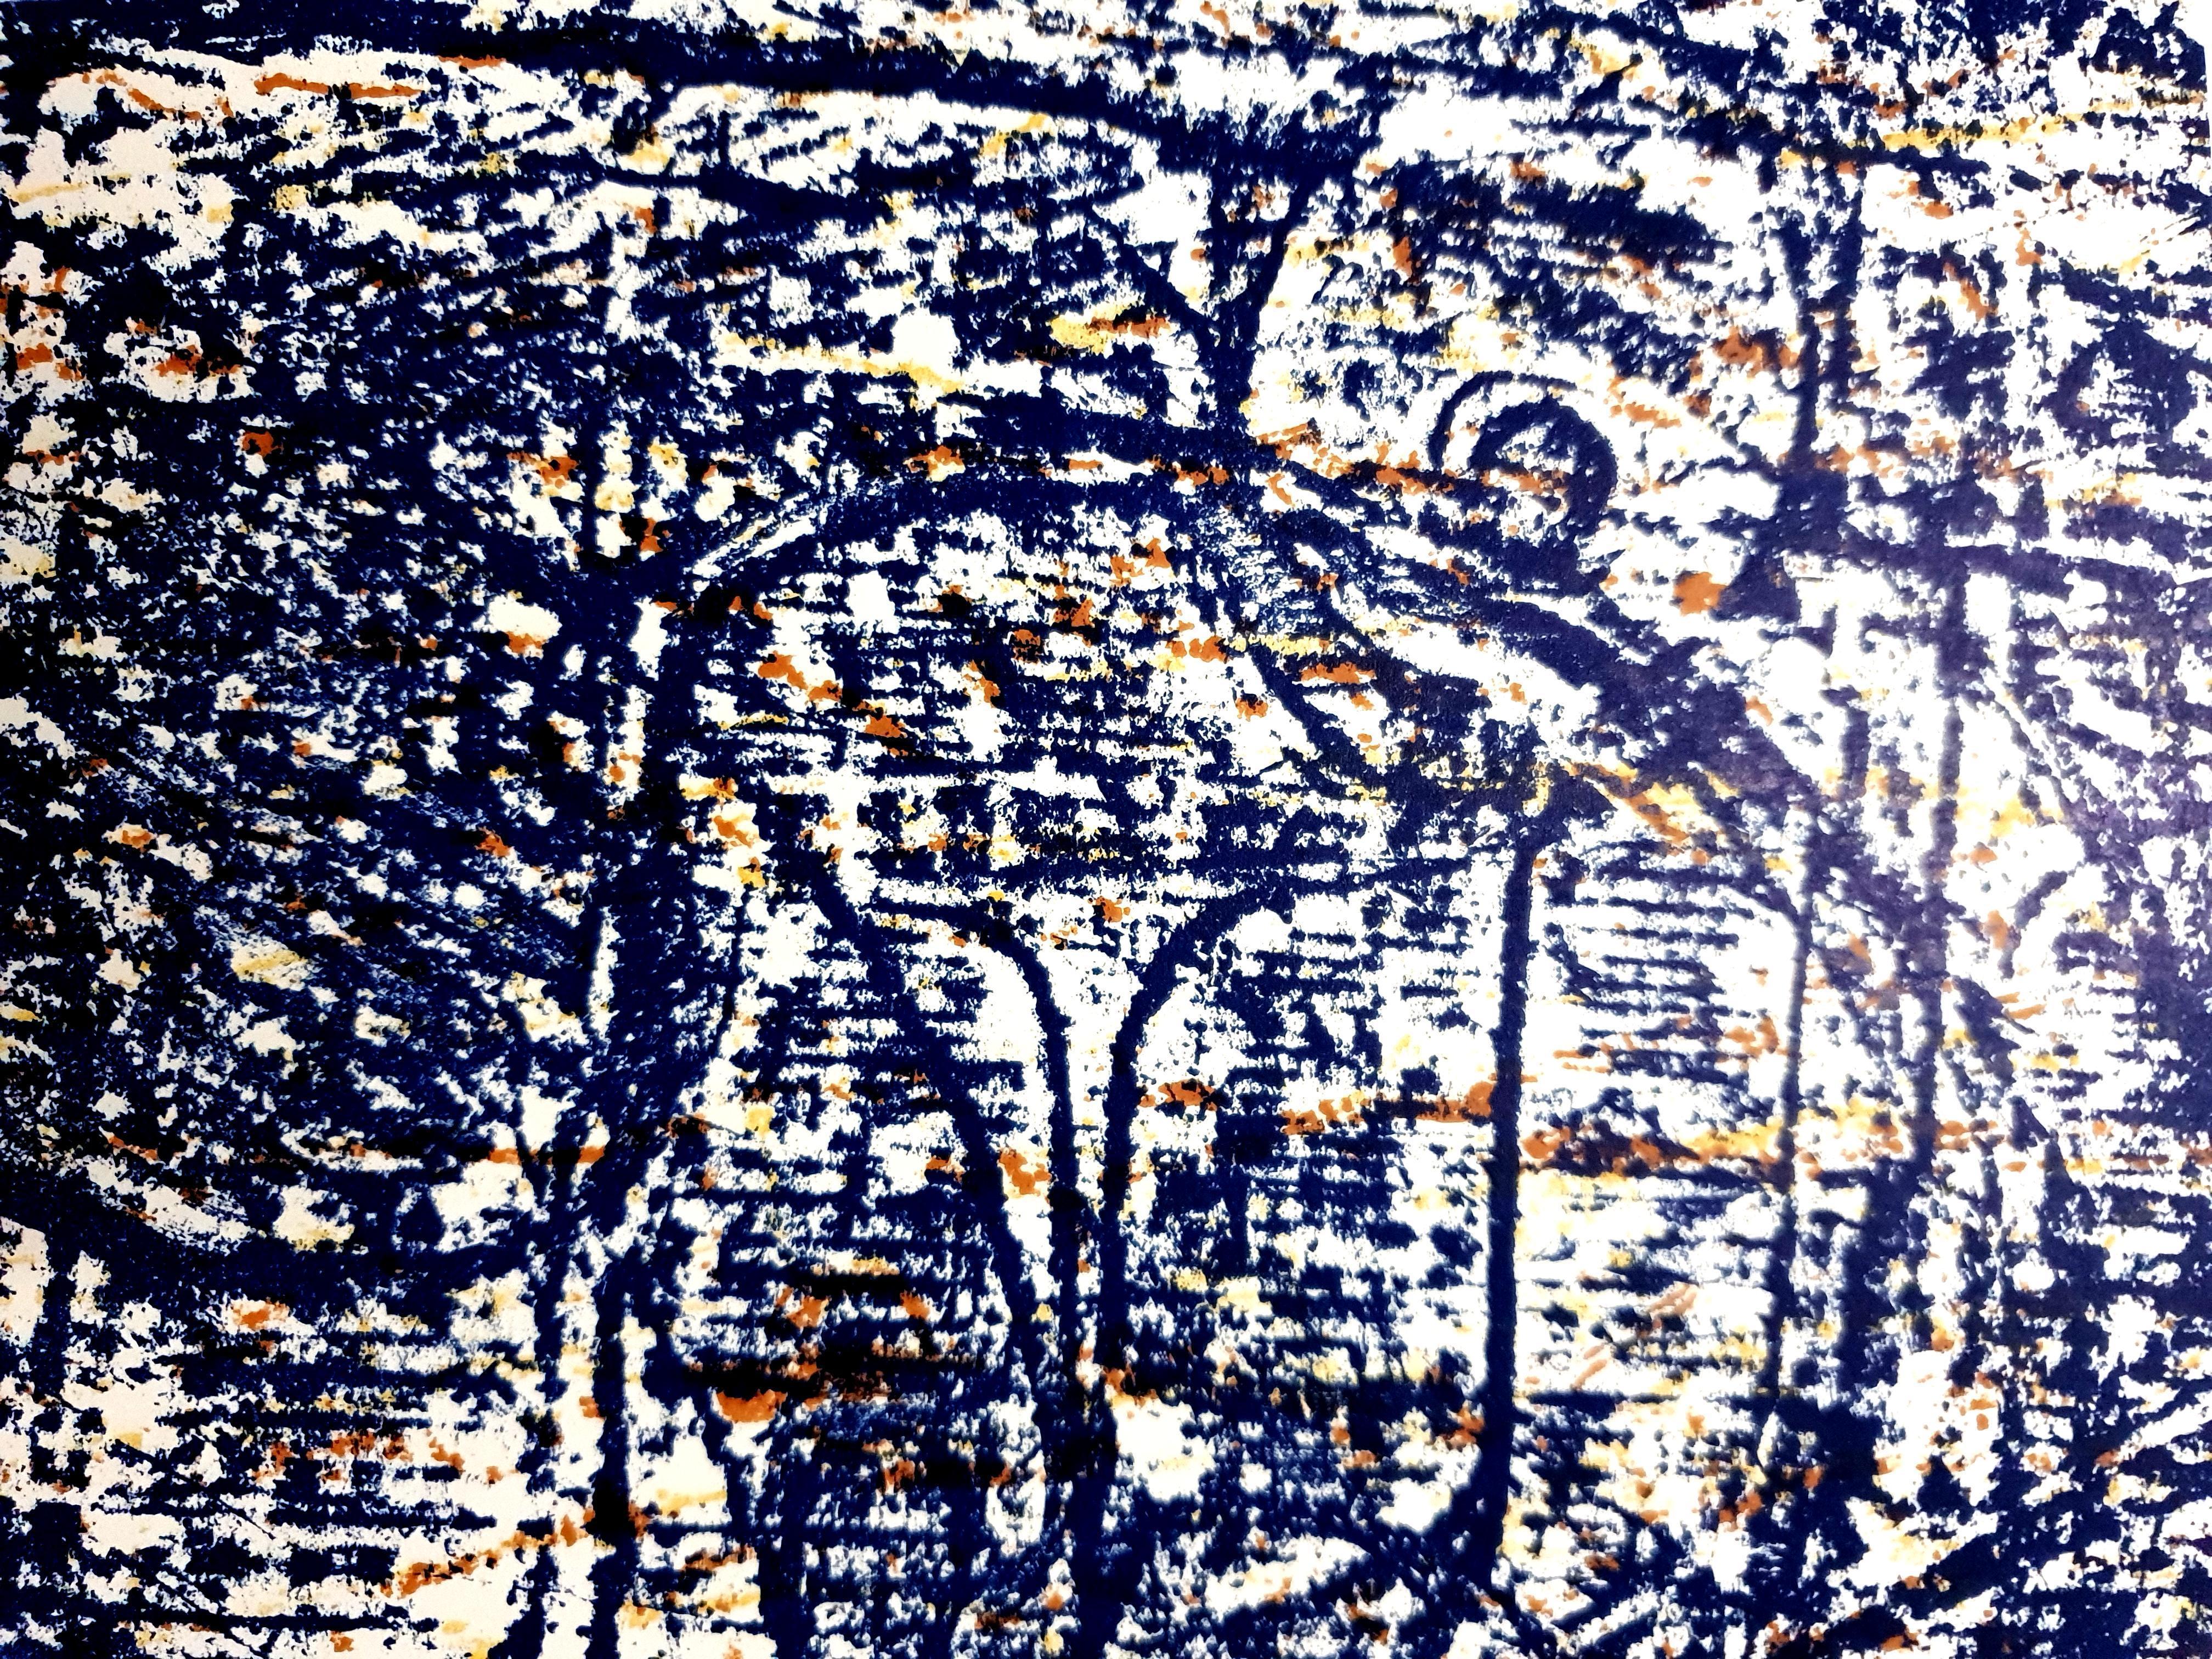 Max Ernst - Vögel -  Original-Lithographie
Vögel, 1962
Abmessungen: 32 x 24 cm
Aus der Kunstzeitschrift XXe siècle
Unsigniert und nicht nummeriert wie ausgestellt